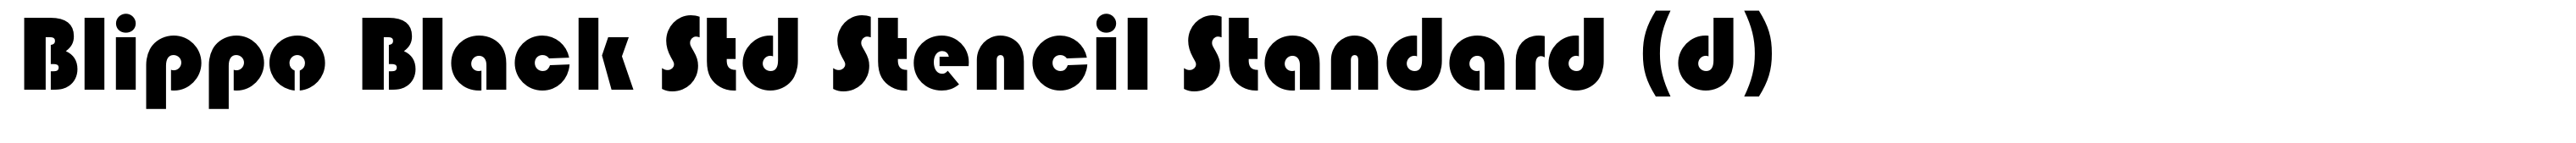 Blippo Black Std Stencil Standard (d)